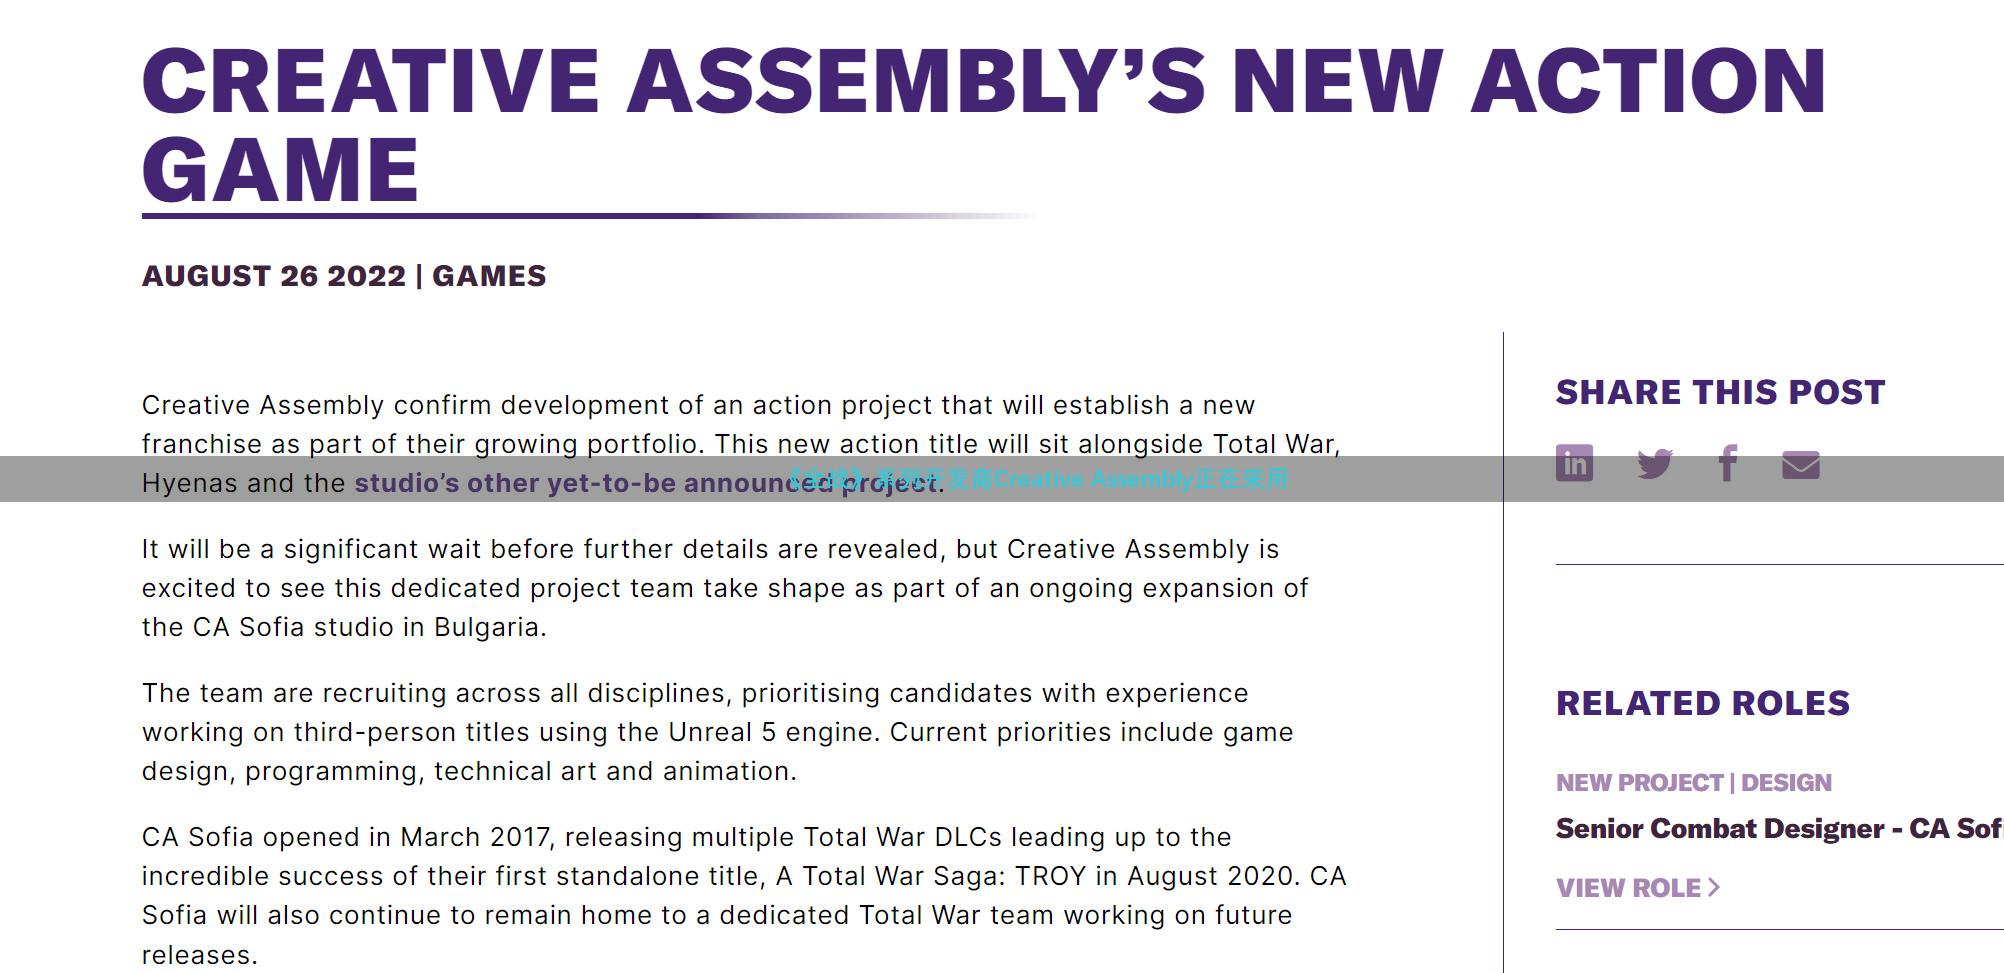 《全战》系列开发商Creative Assembly正在采用